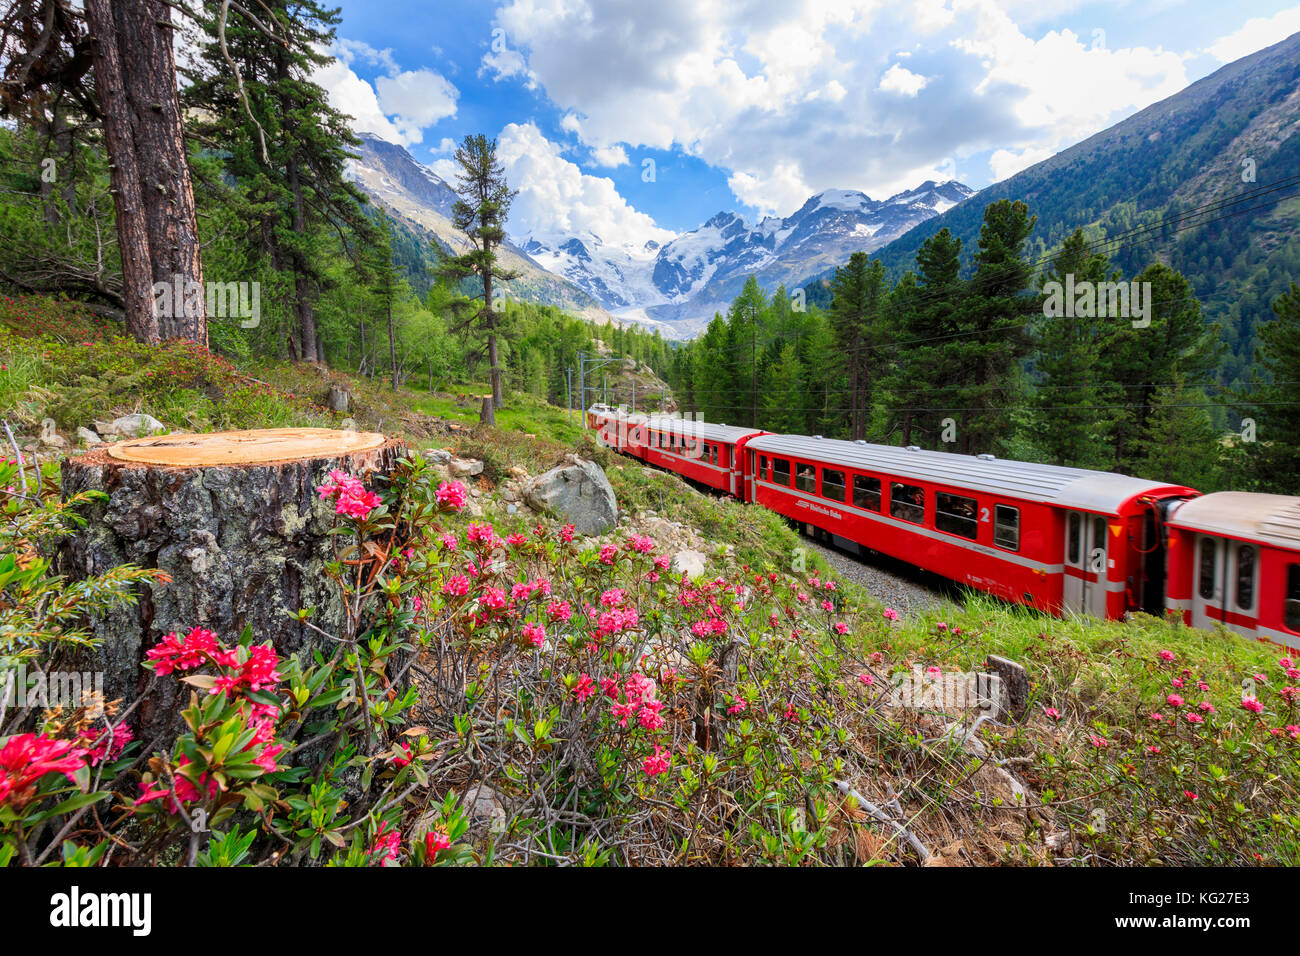 Train bernina express entouré de rhododendrons, morteratsch, engadine, canton des Grisons, Suisse, Europe Banque D'Images